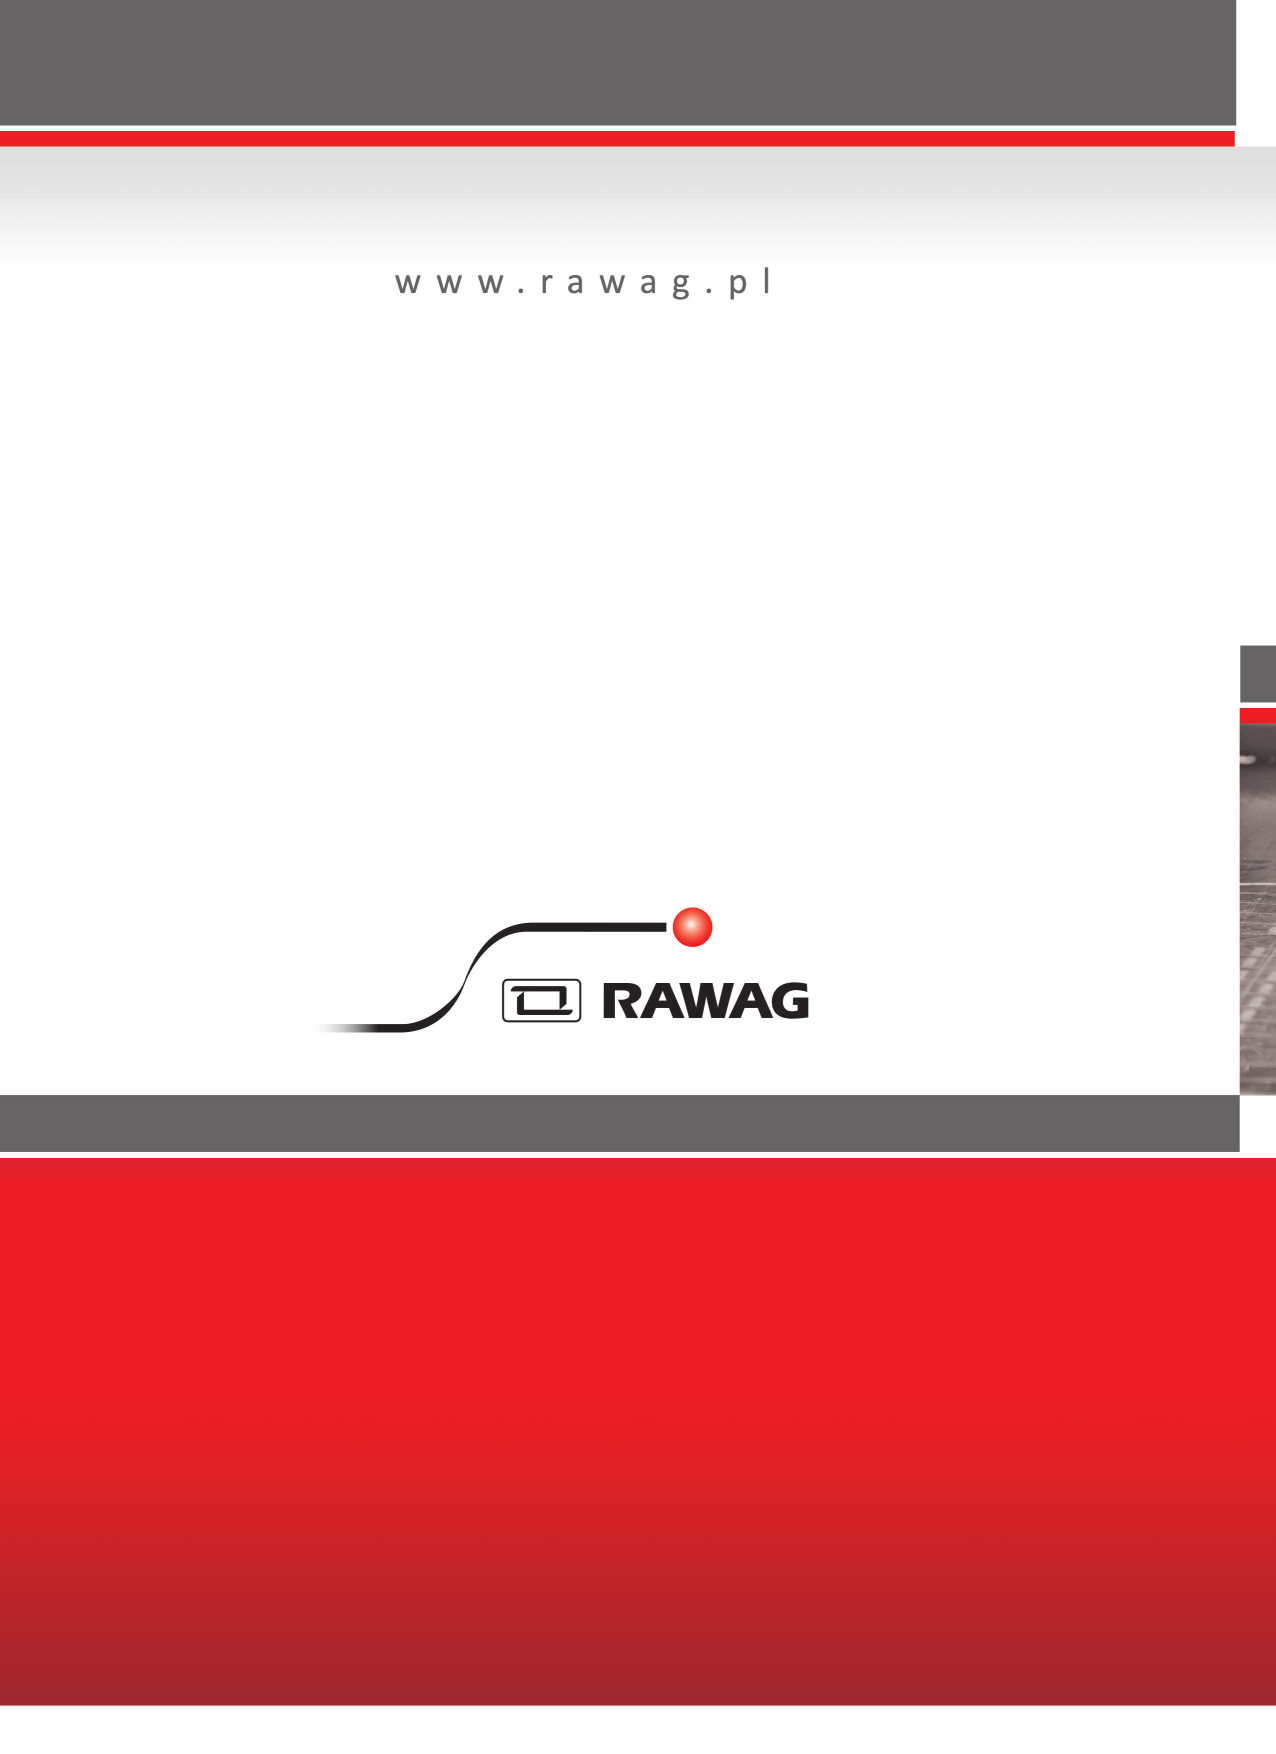 RAWAG Sp. z o.o. Rawicka Fabryka Wyposażenia Wagonów PL 63-900 Rawicz, ul.